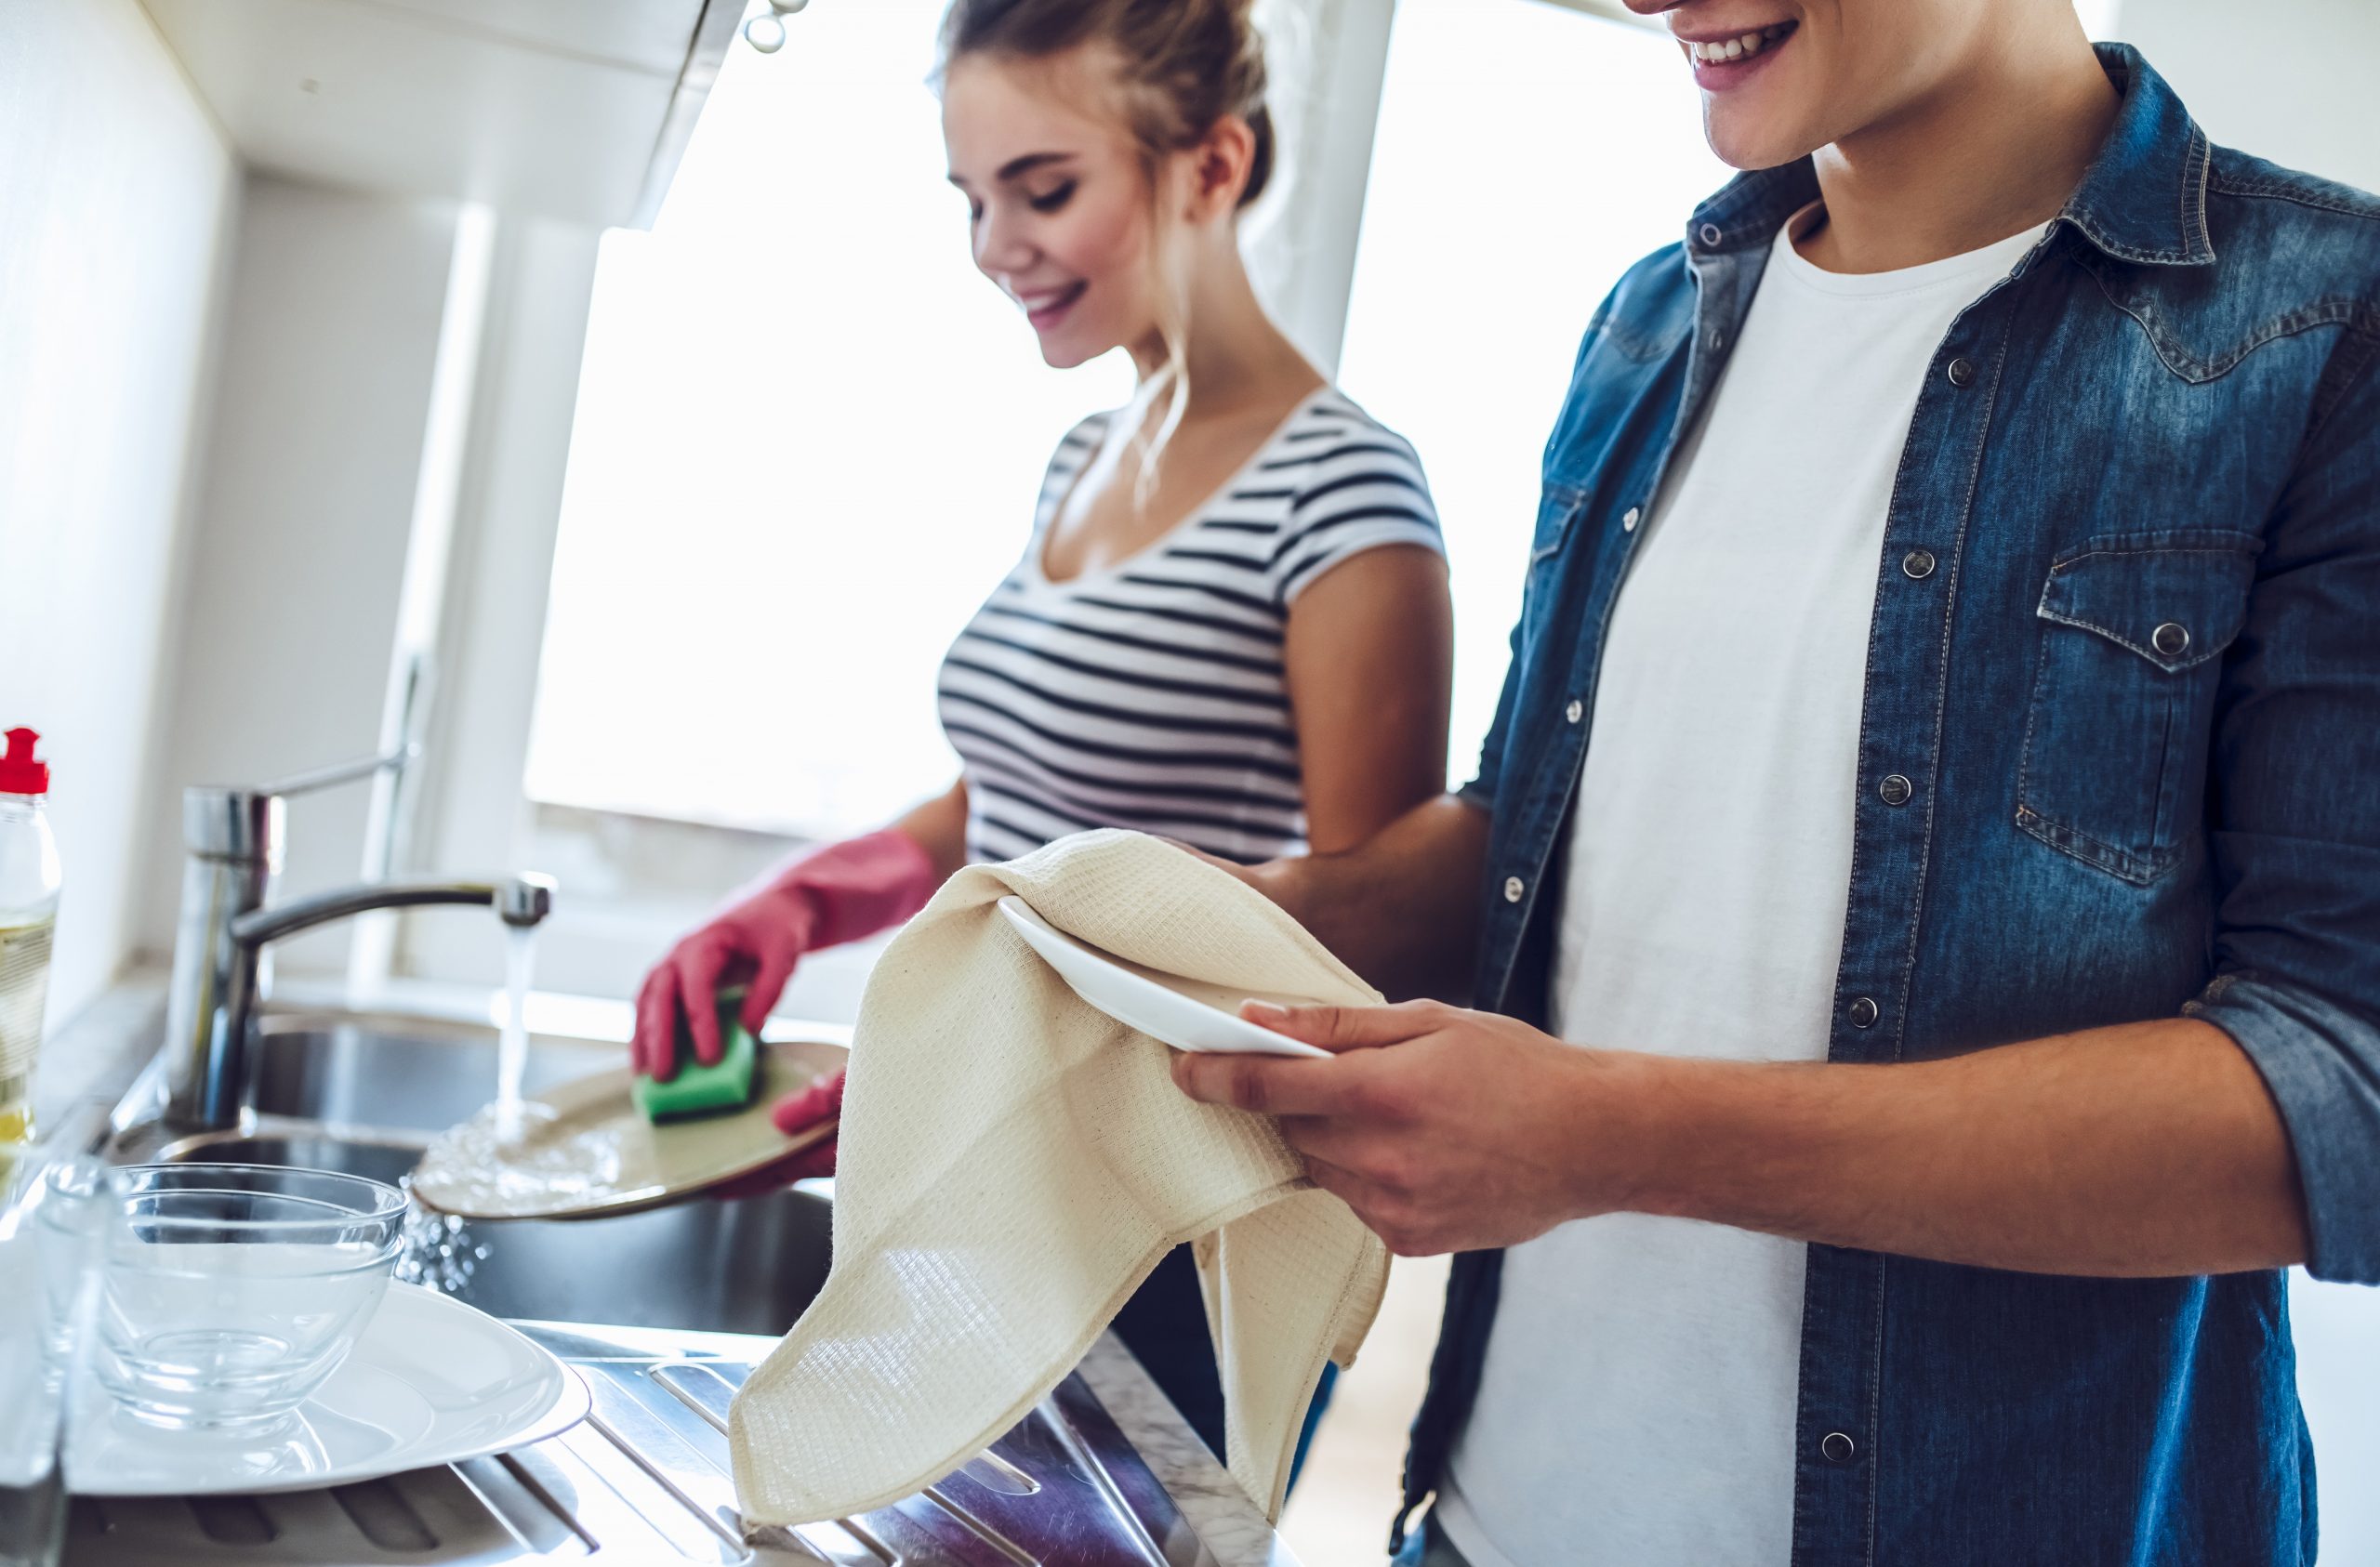 Na imagem, um mulher está lavando um prato na cor branca com o auxilio de uma esponja verde, ela usa uma luva na cor rosa. Ao seu lado está um homem secando um prato com o auxílio de um pano de prato.